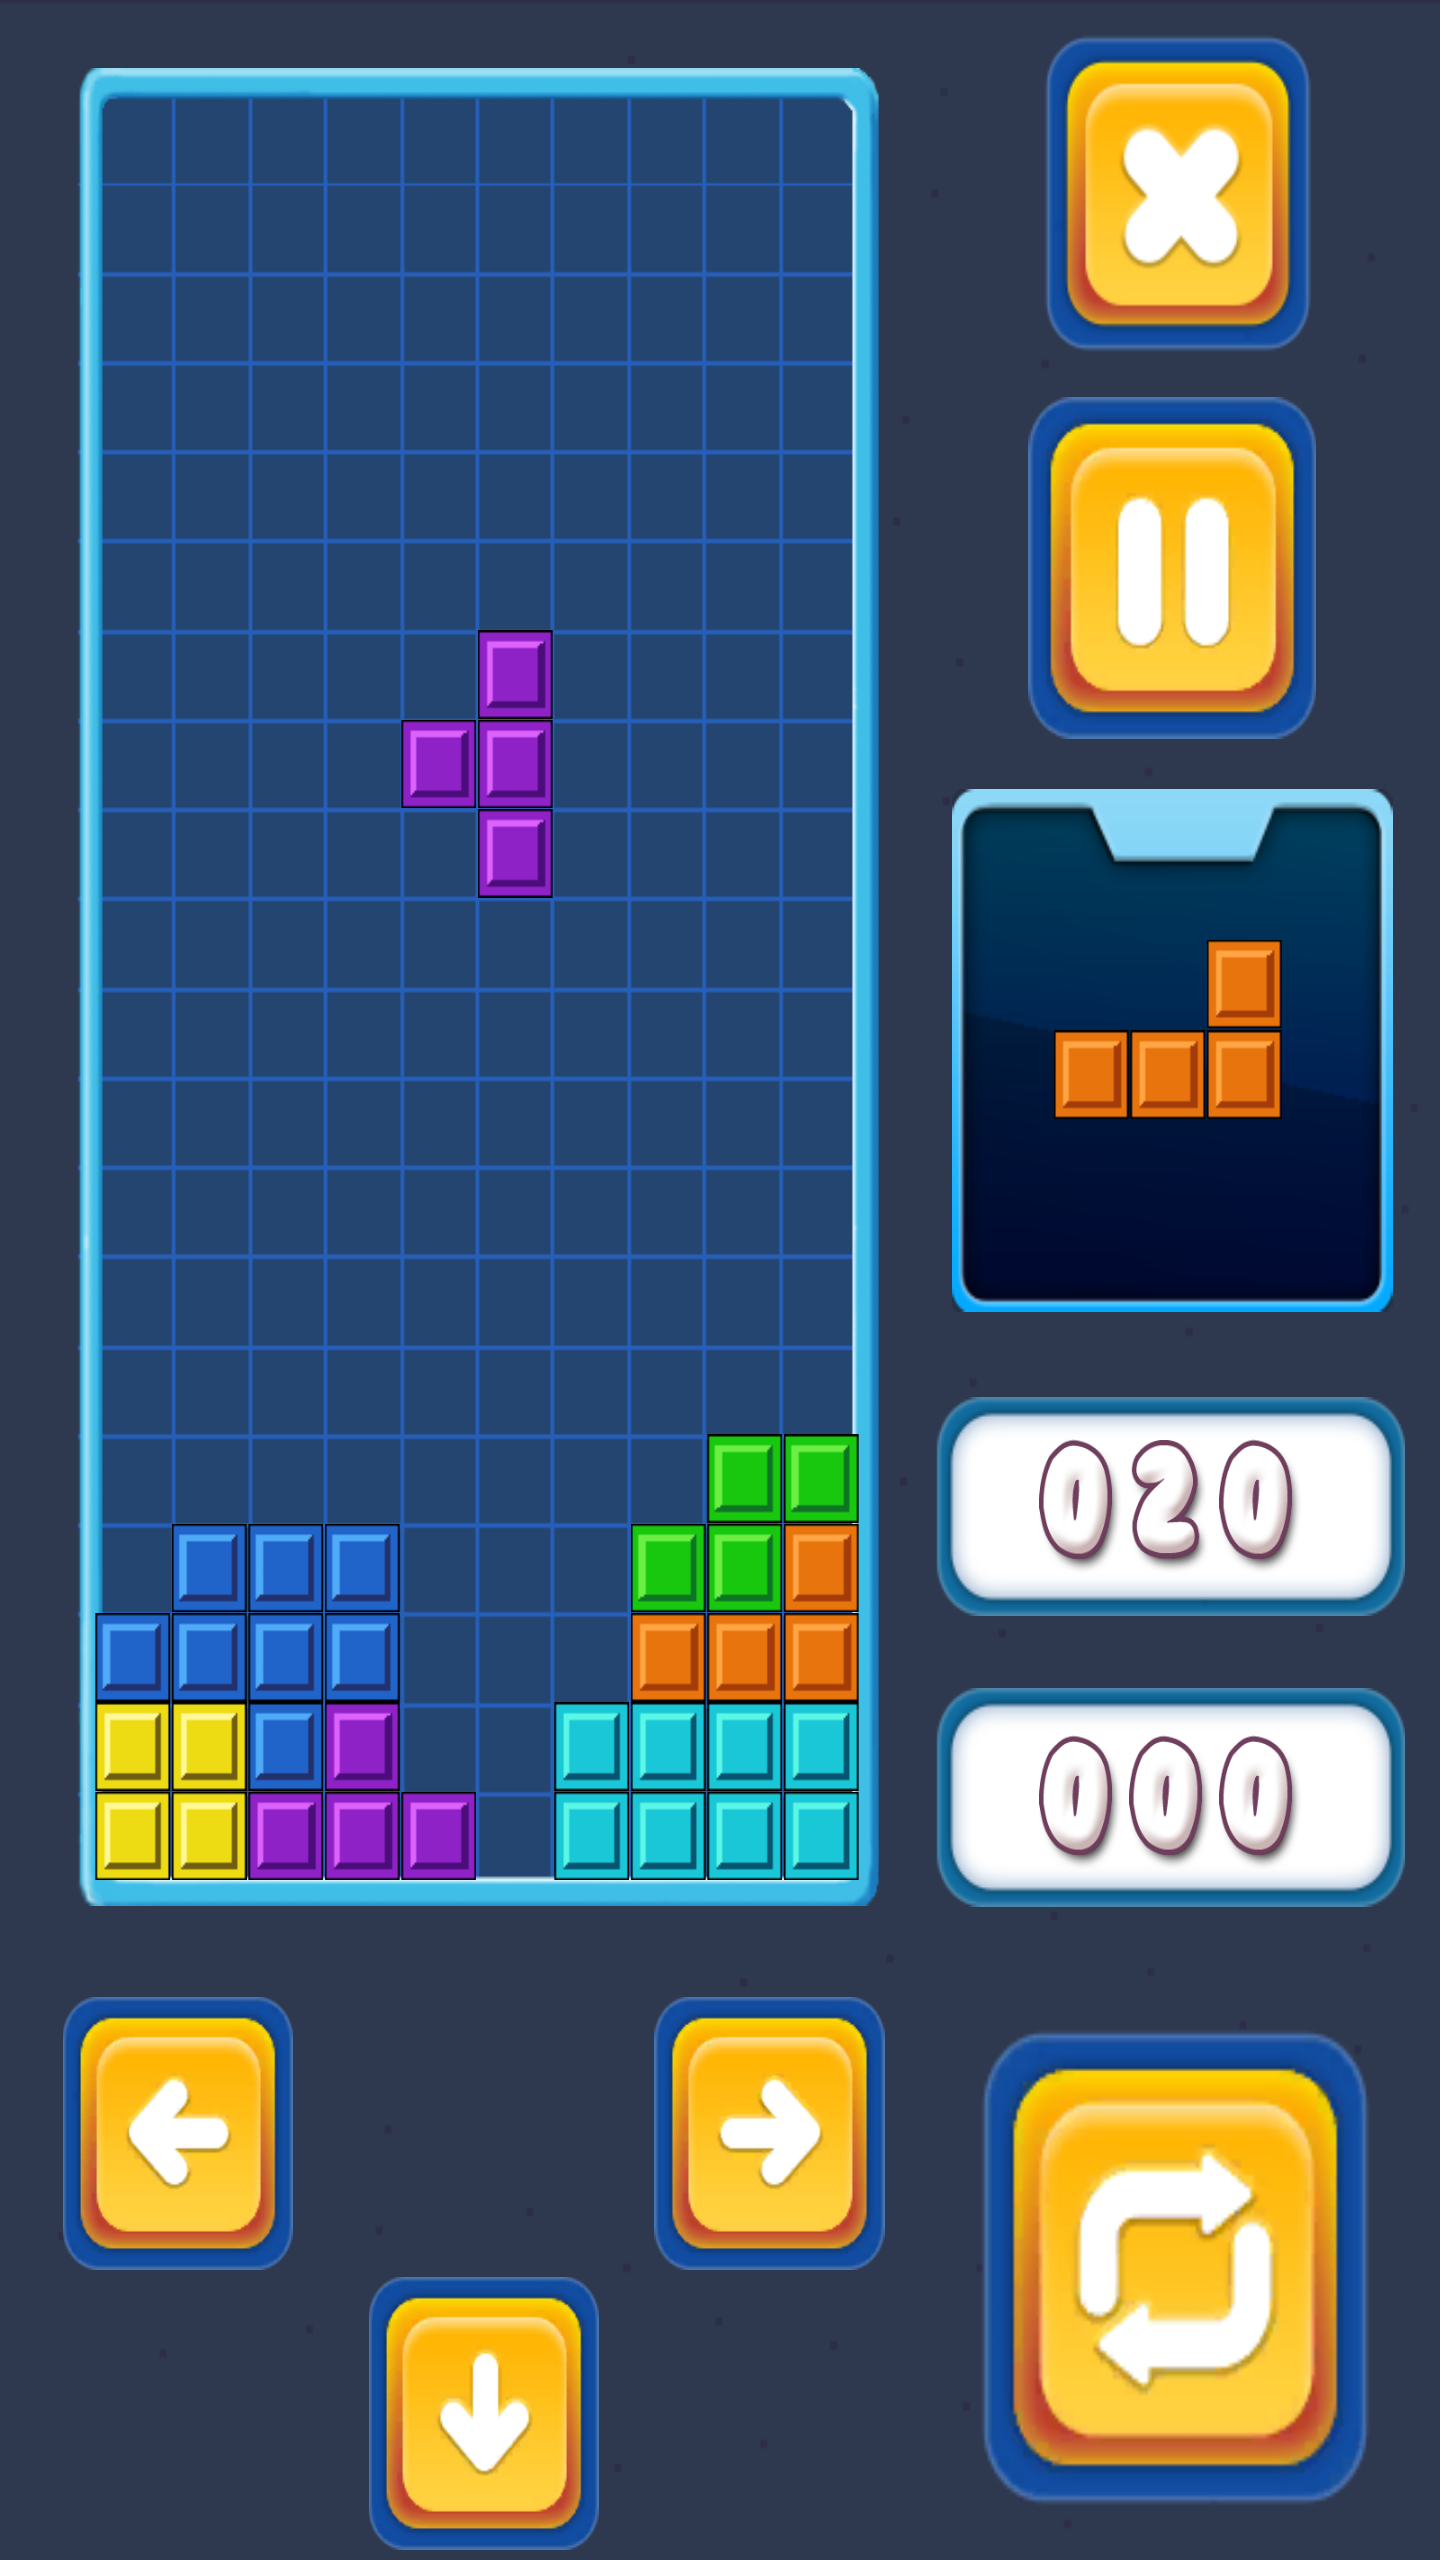 Brick Classic Tetrisのキャプチャ